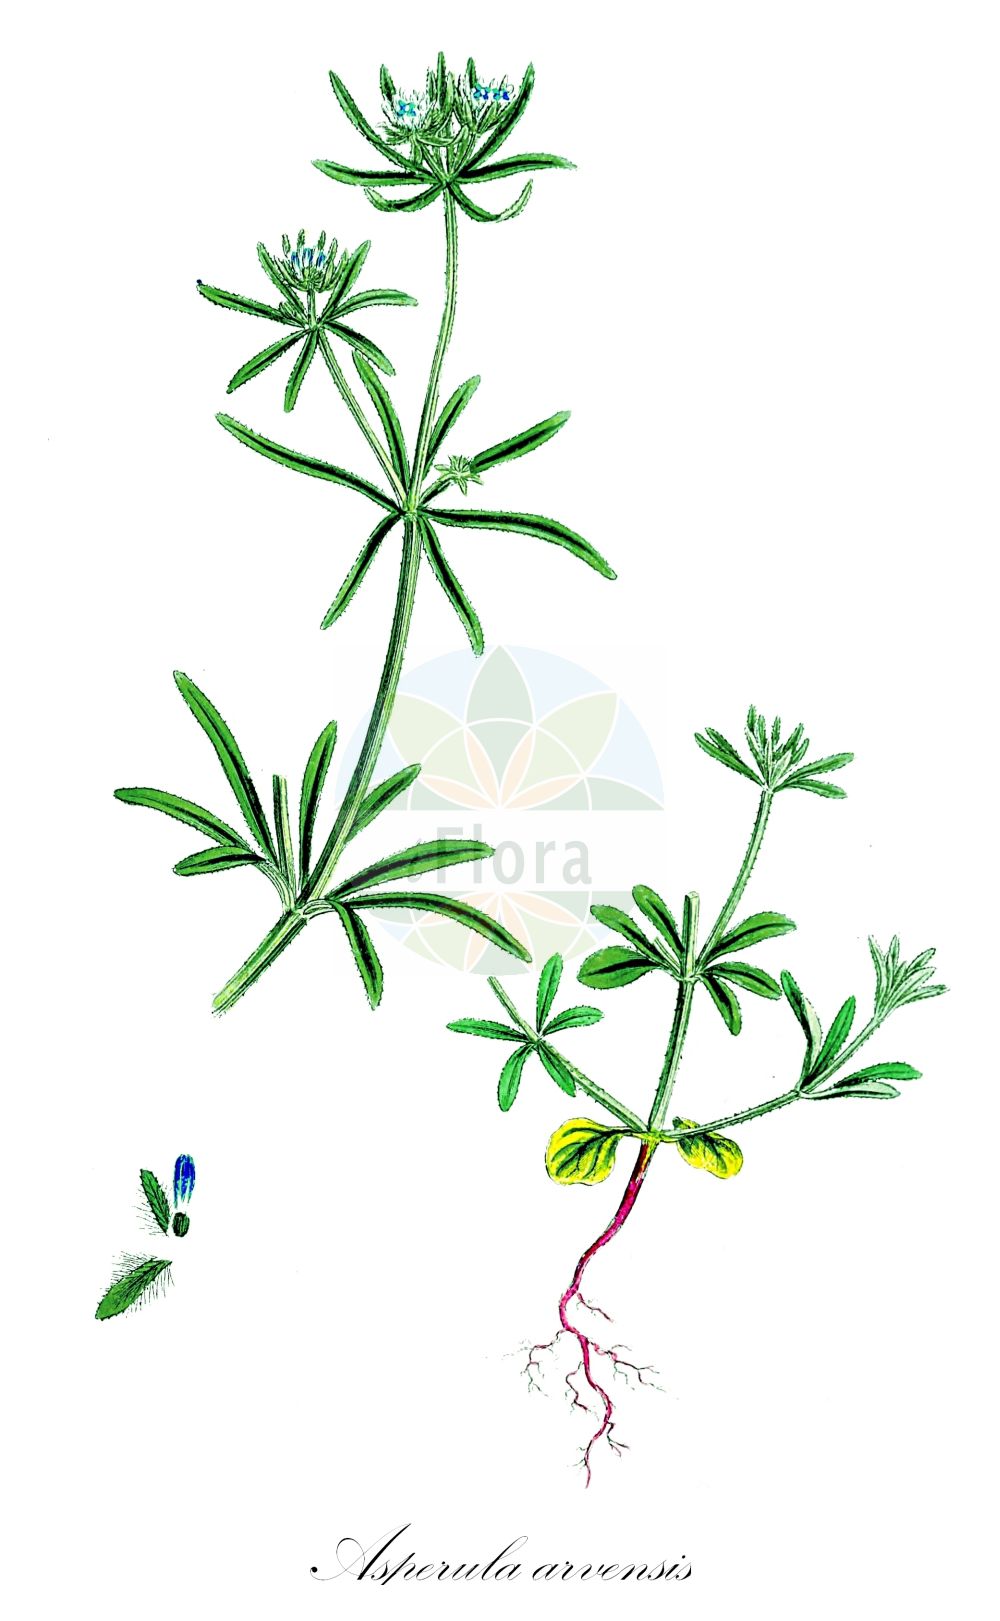 Historische Abbildung von Asperula arvensis (Acker-Meier - Blue Woodruff). Das Bild zeigt Blatt, Bluete, Frucht und Same. ---- Historical Drawing of Asperula arvensis (Acker-Meier - Blue Woodruff). The image is showing leaf, flower, fruit and seed.(Asperula arvensis,Acker-Meier,Blue Woodruff,Asperula arvensis,Acker-Meier,Acker-Meister,Blue Woodruff,Field Woodruff,Quincywort,Asperula,Meier,Woodruff,Rubiaceae,Rötegewächse,Bedstraw family,Blatt,Bluete,Frucht,Same,leaf,flower,fruit,seed,Sowerby (1790-1813))